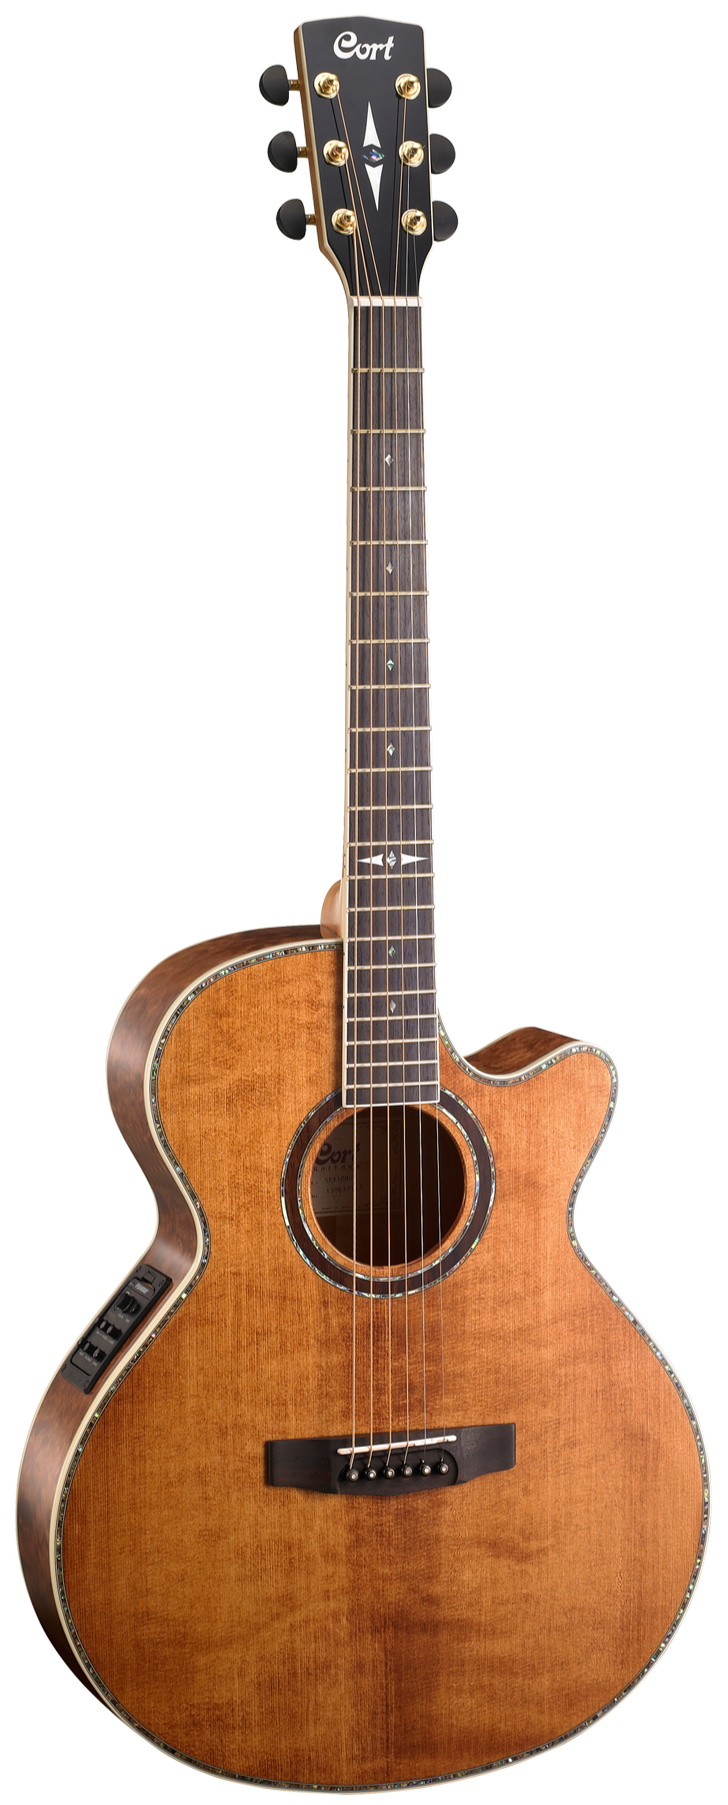 Cort SFX-10 Acoustic Guitar - Antique Brown